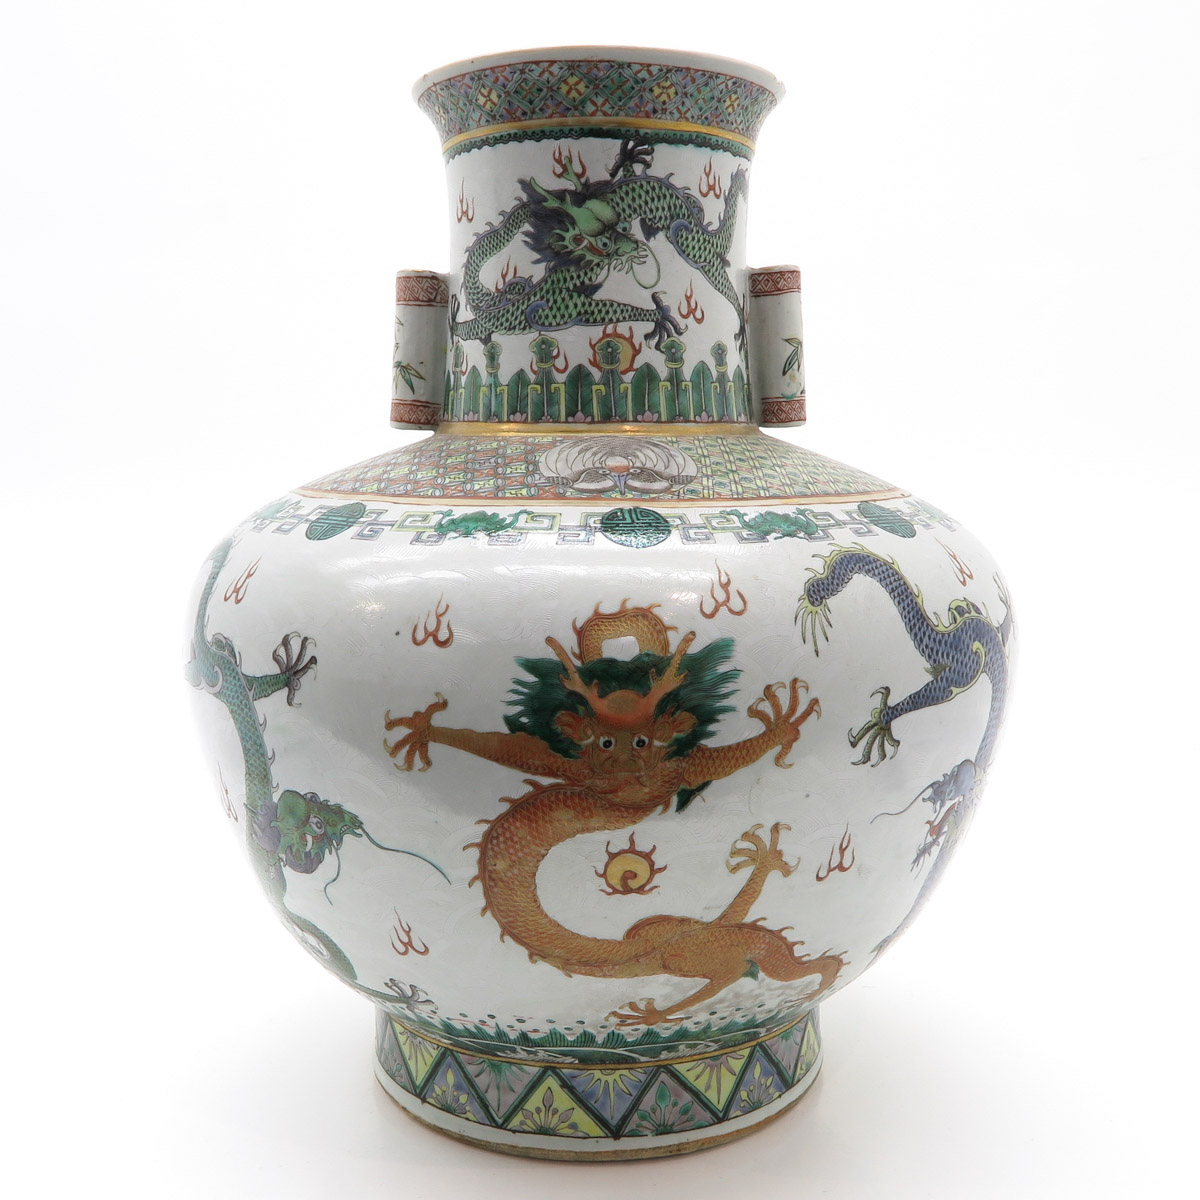 China Porcelain Sgraffito and Famille Verte Decor Vase